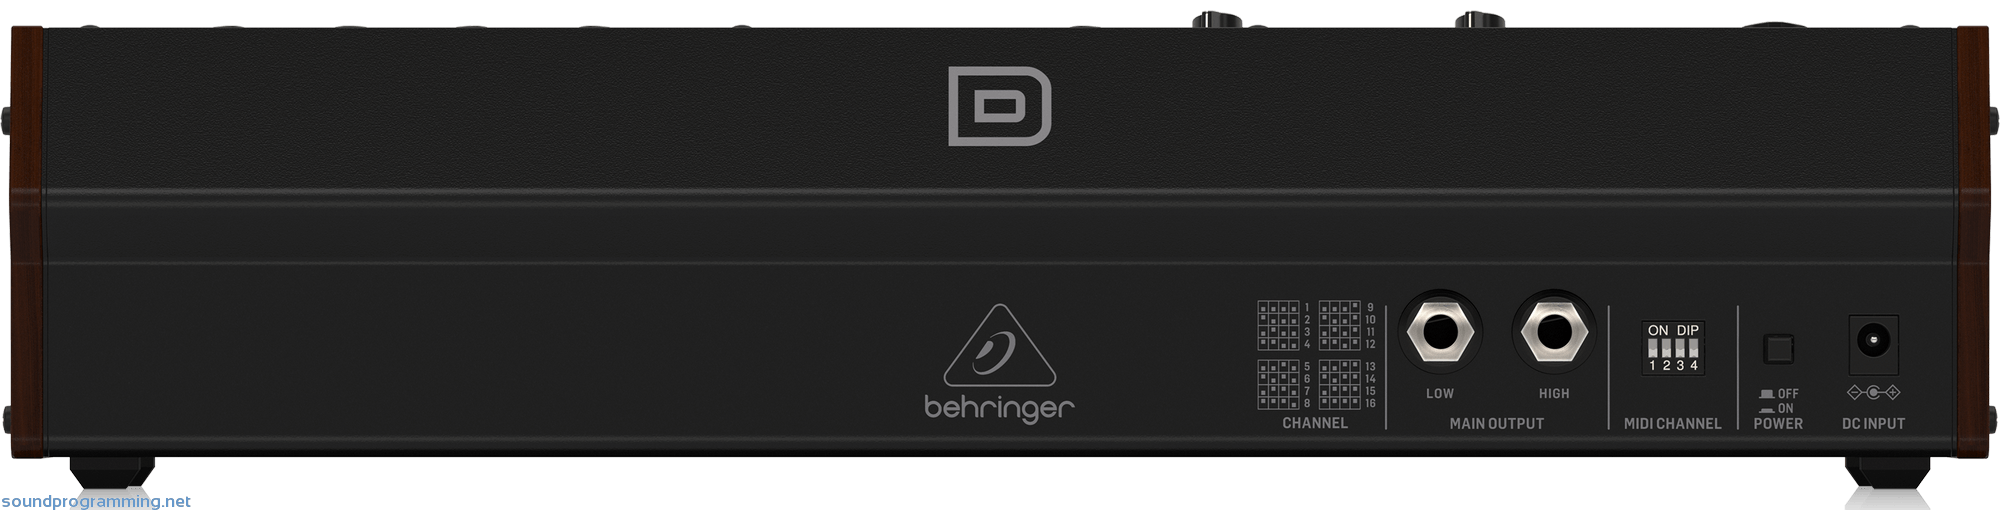 Behringer Model D Back View